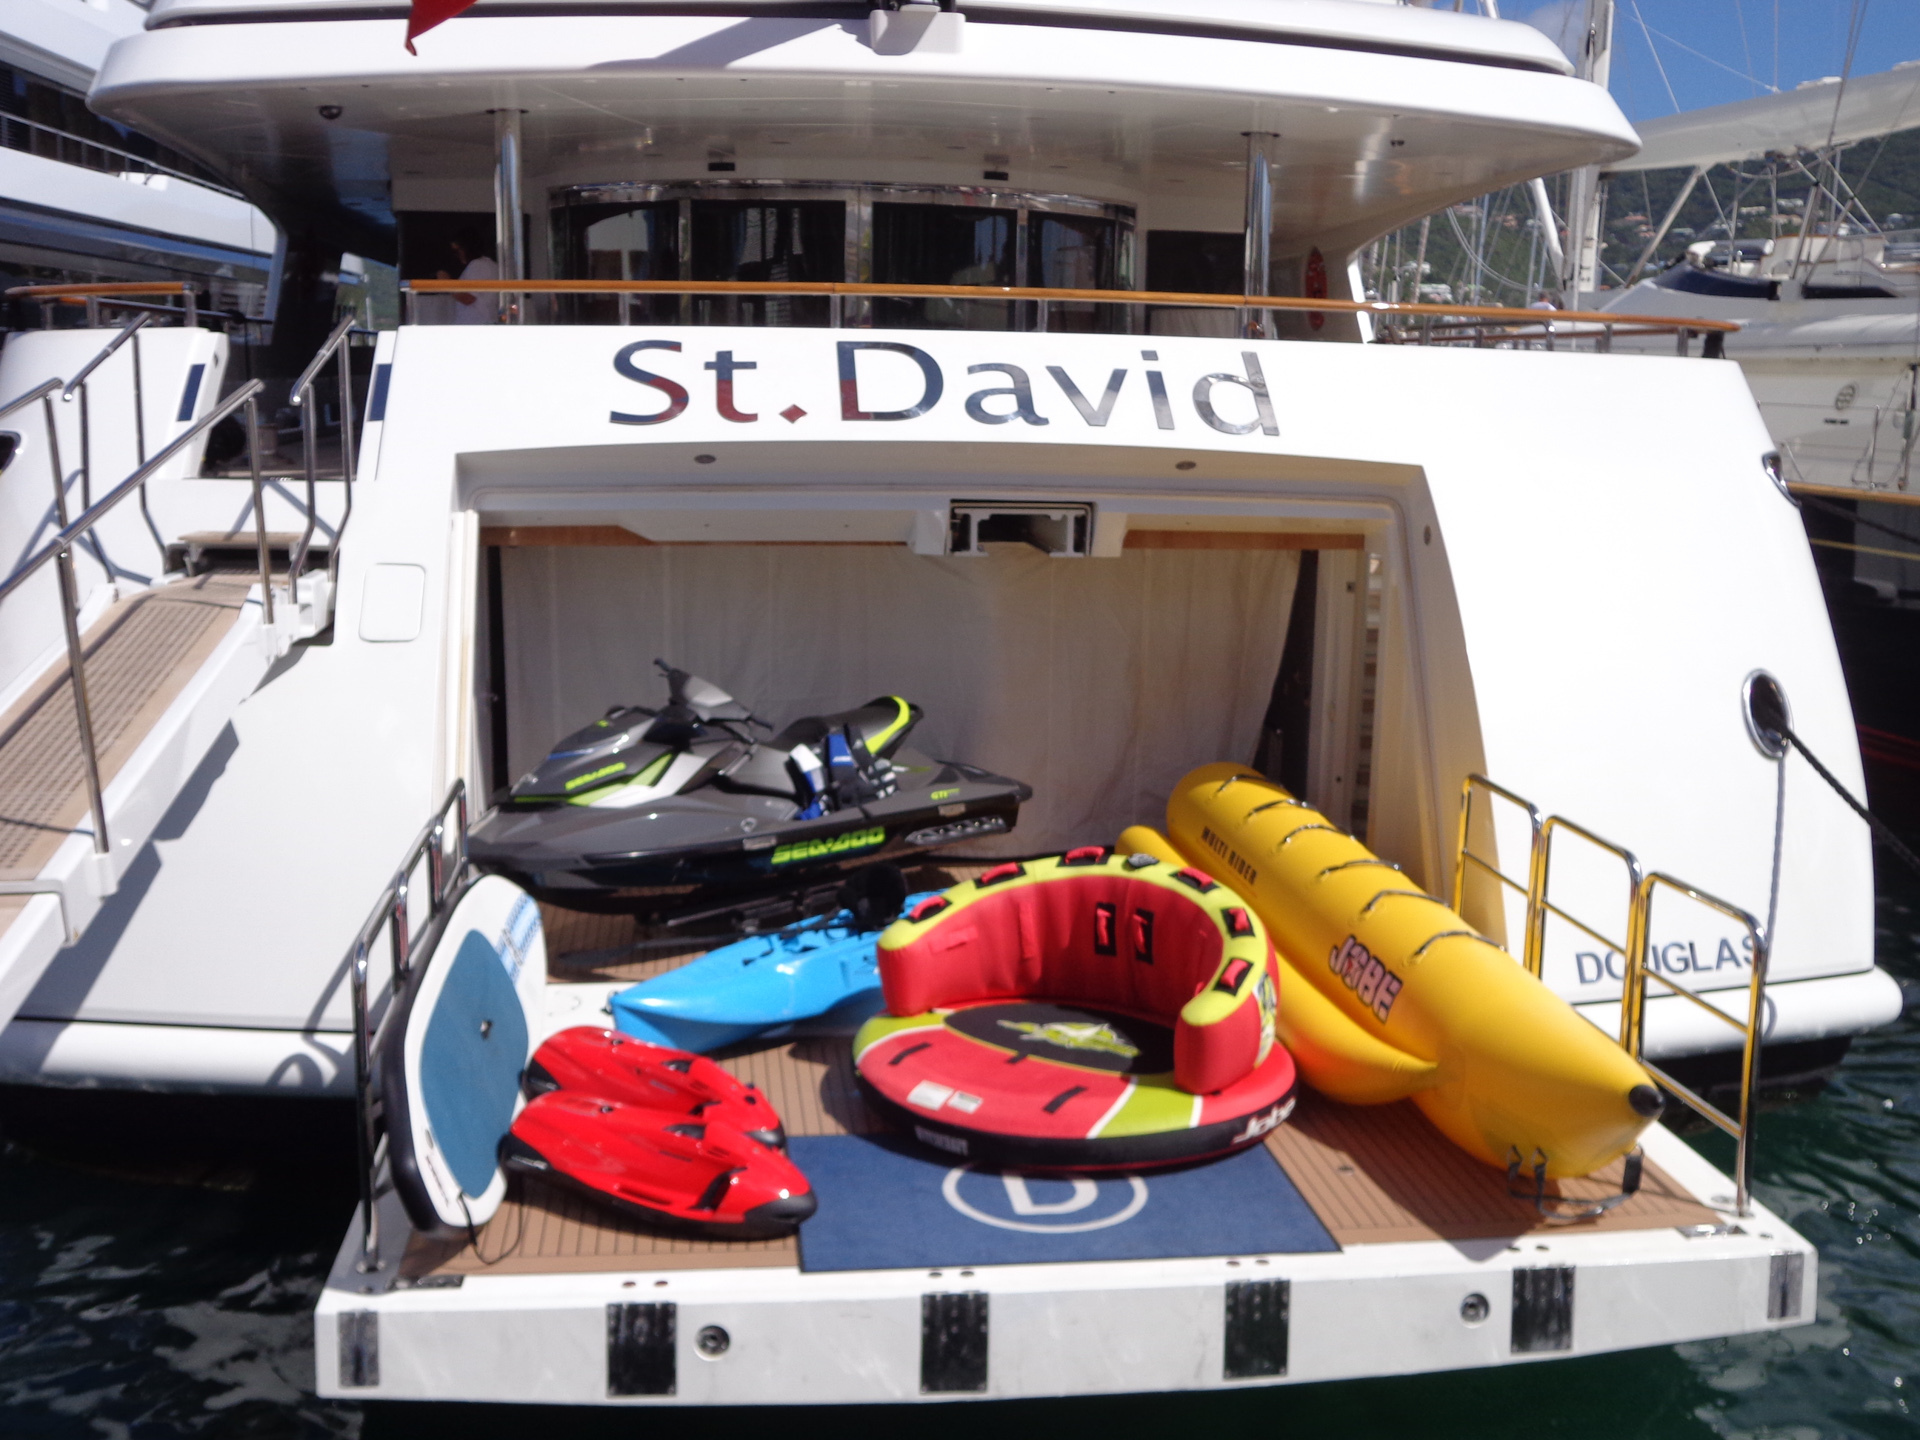 St. David yacht toy selection on the swim platform